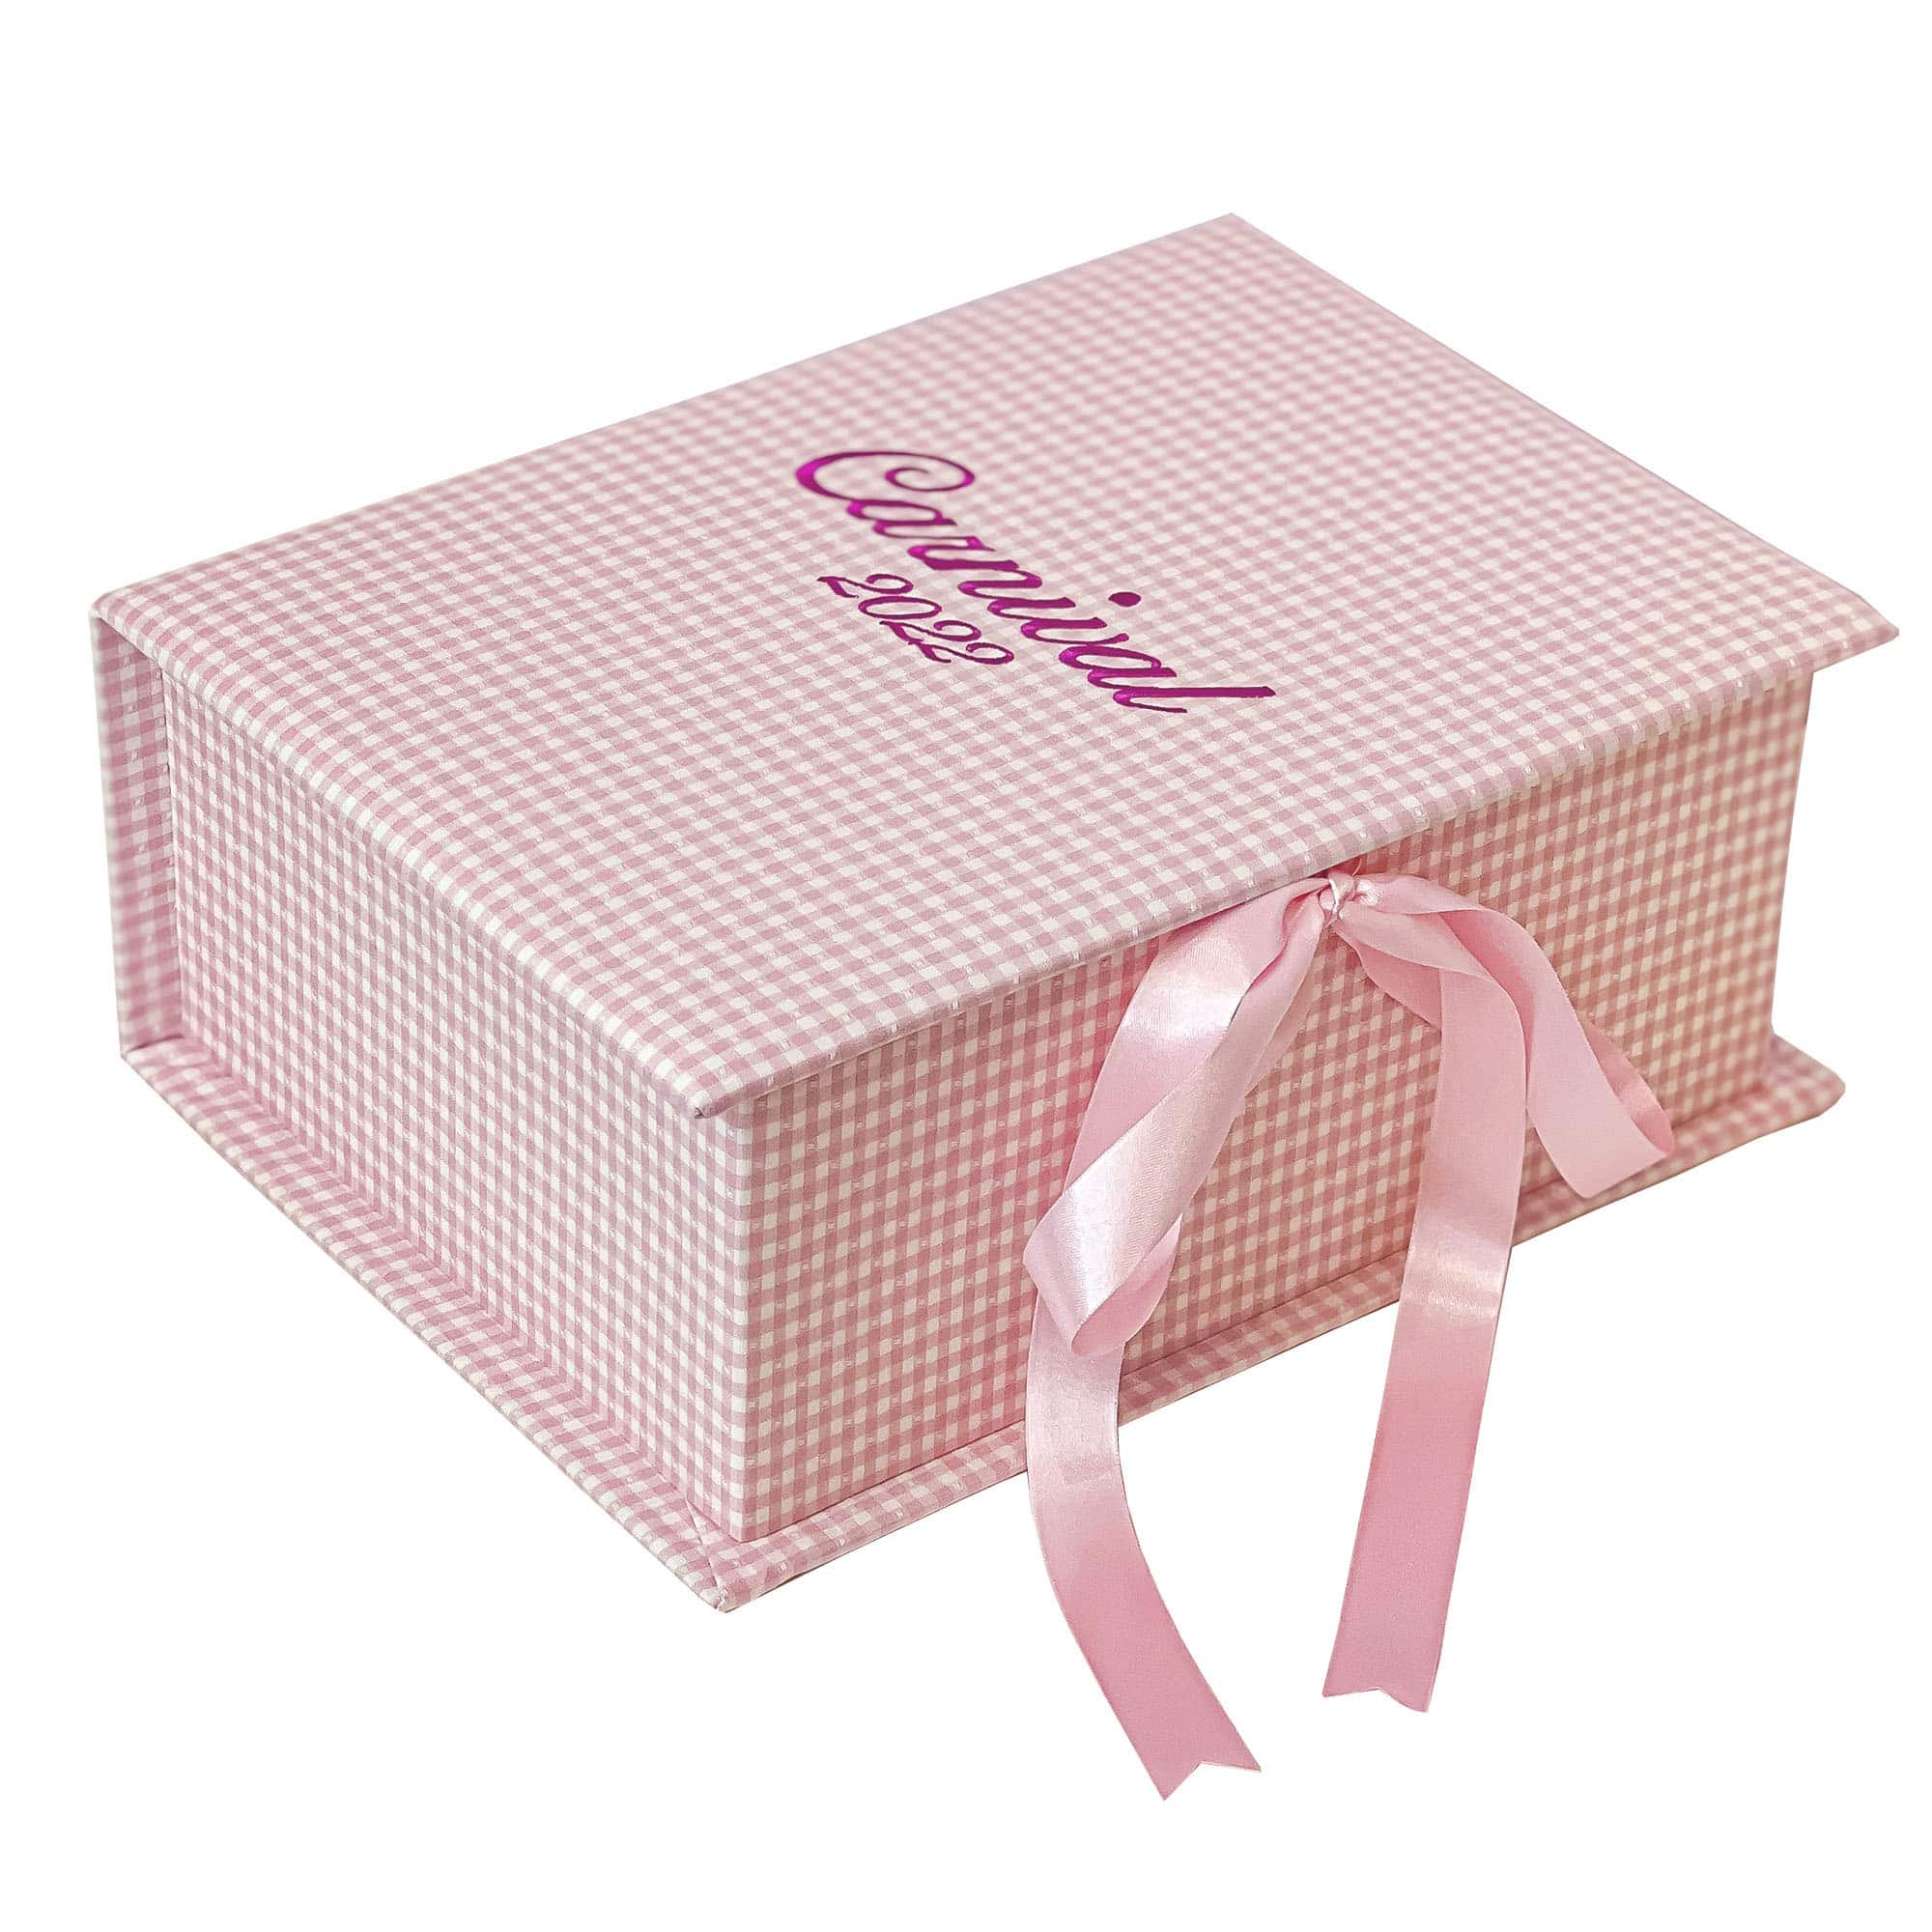 Medium Baby Keepsake Box In Pink Gingham Cotton